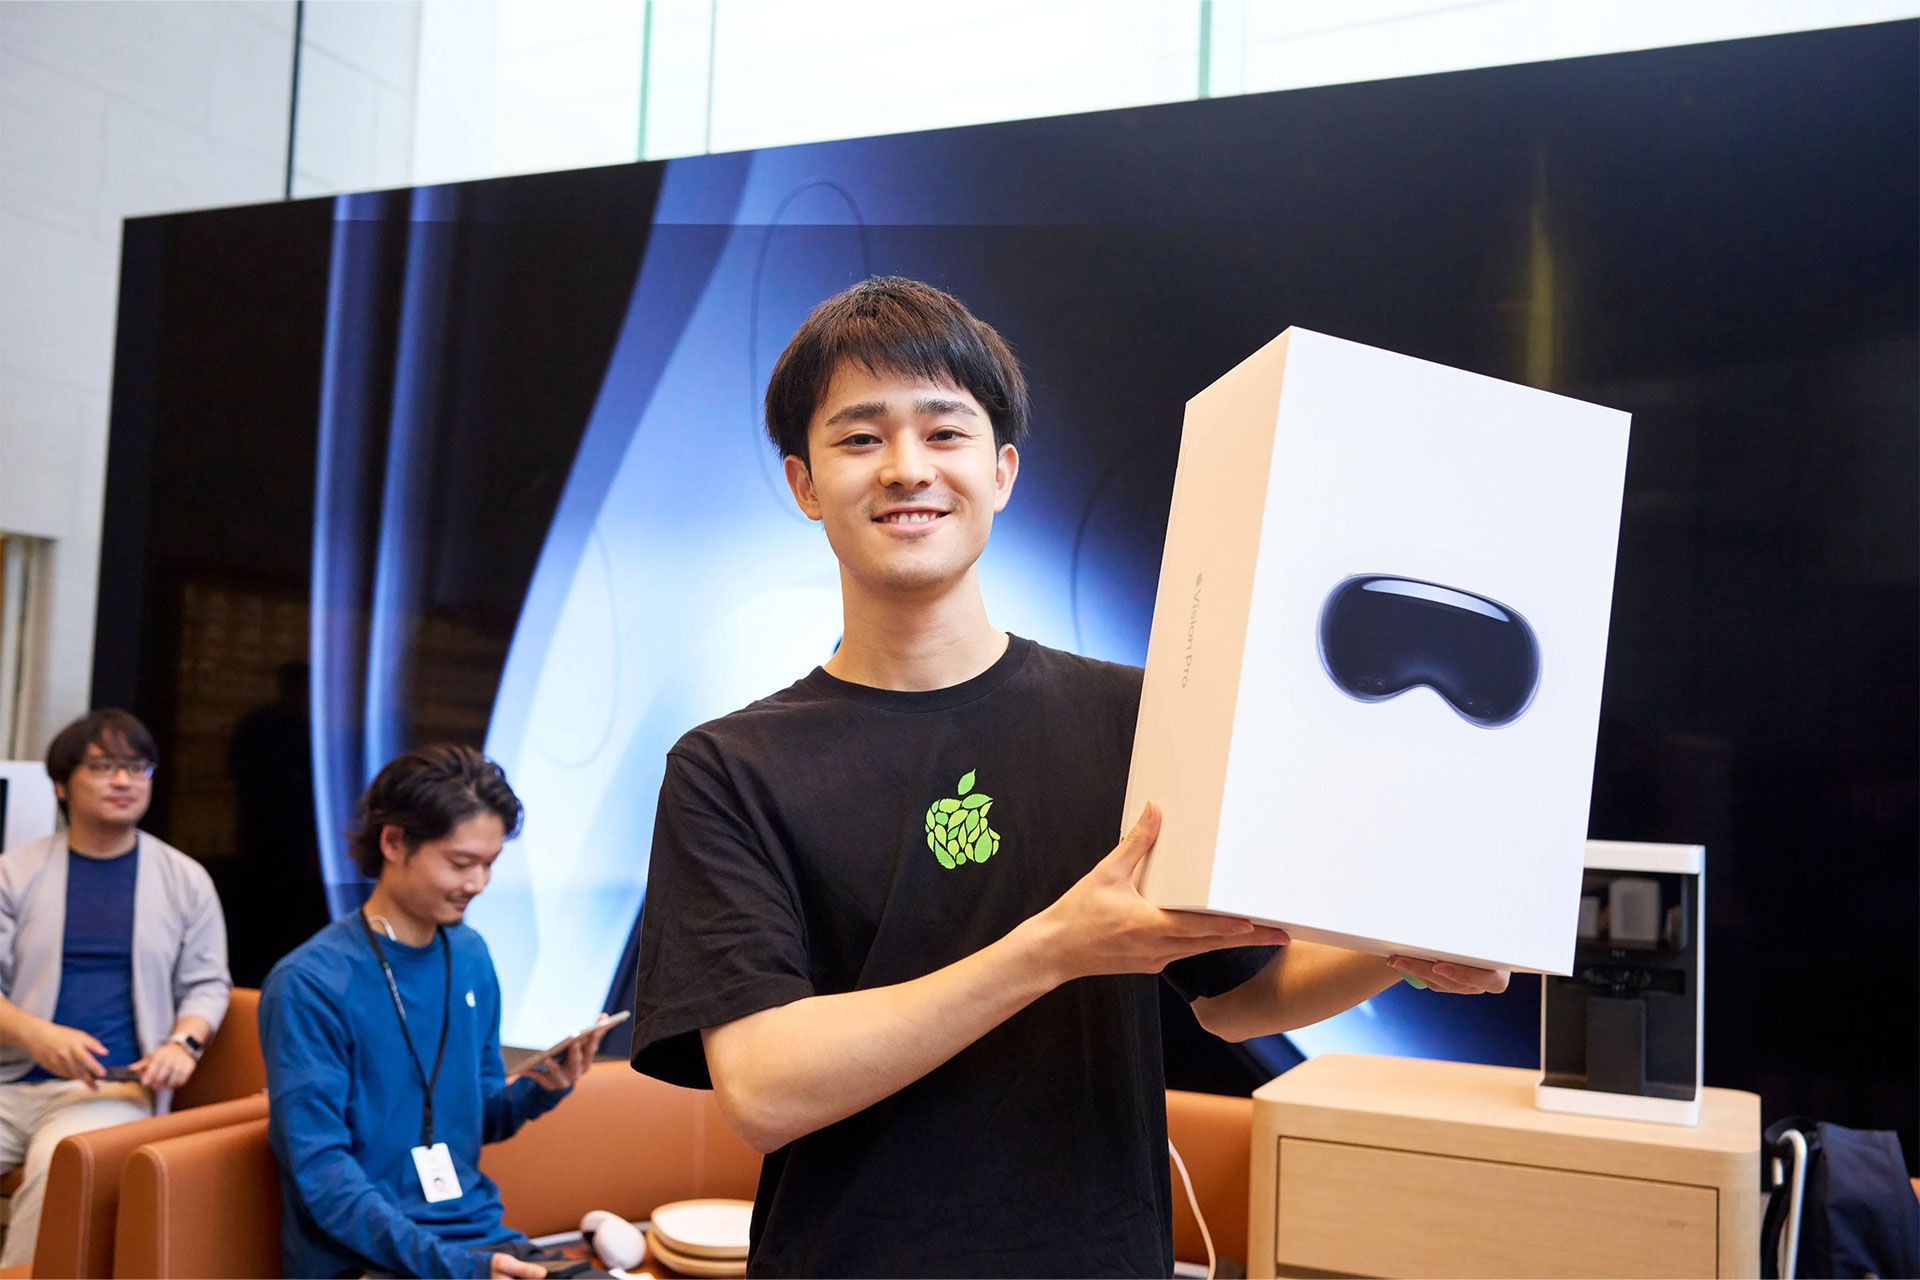 جعبه اپل ویژن پرو در دست یکی از کاربران